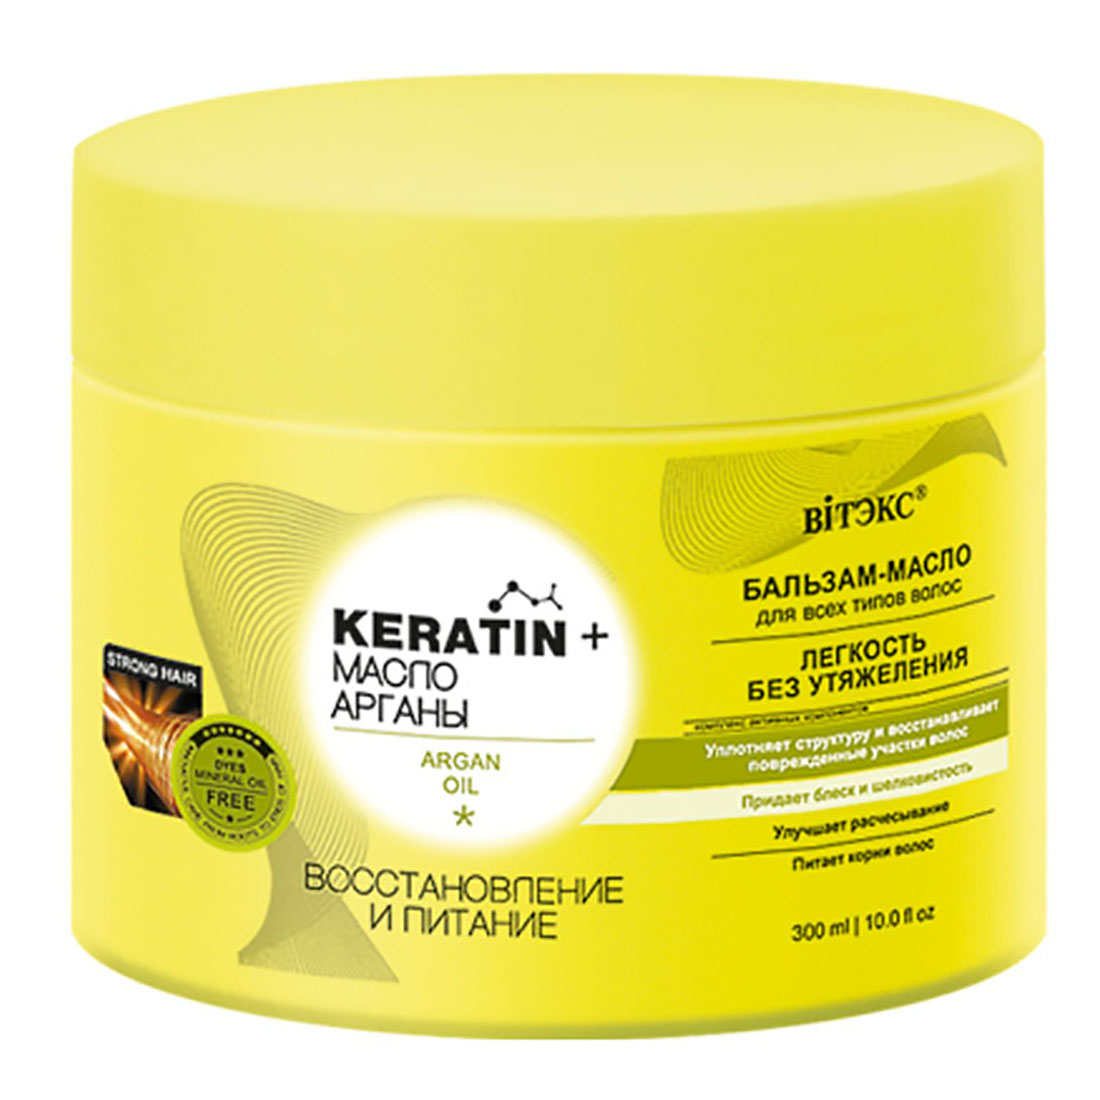 KERATIN+Масло Арганы Бальзам-масло Восстановление и питание для всех типов волос, 300 мл, Витэкс